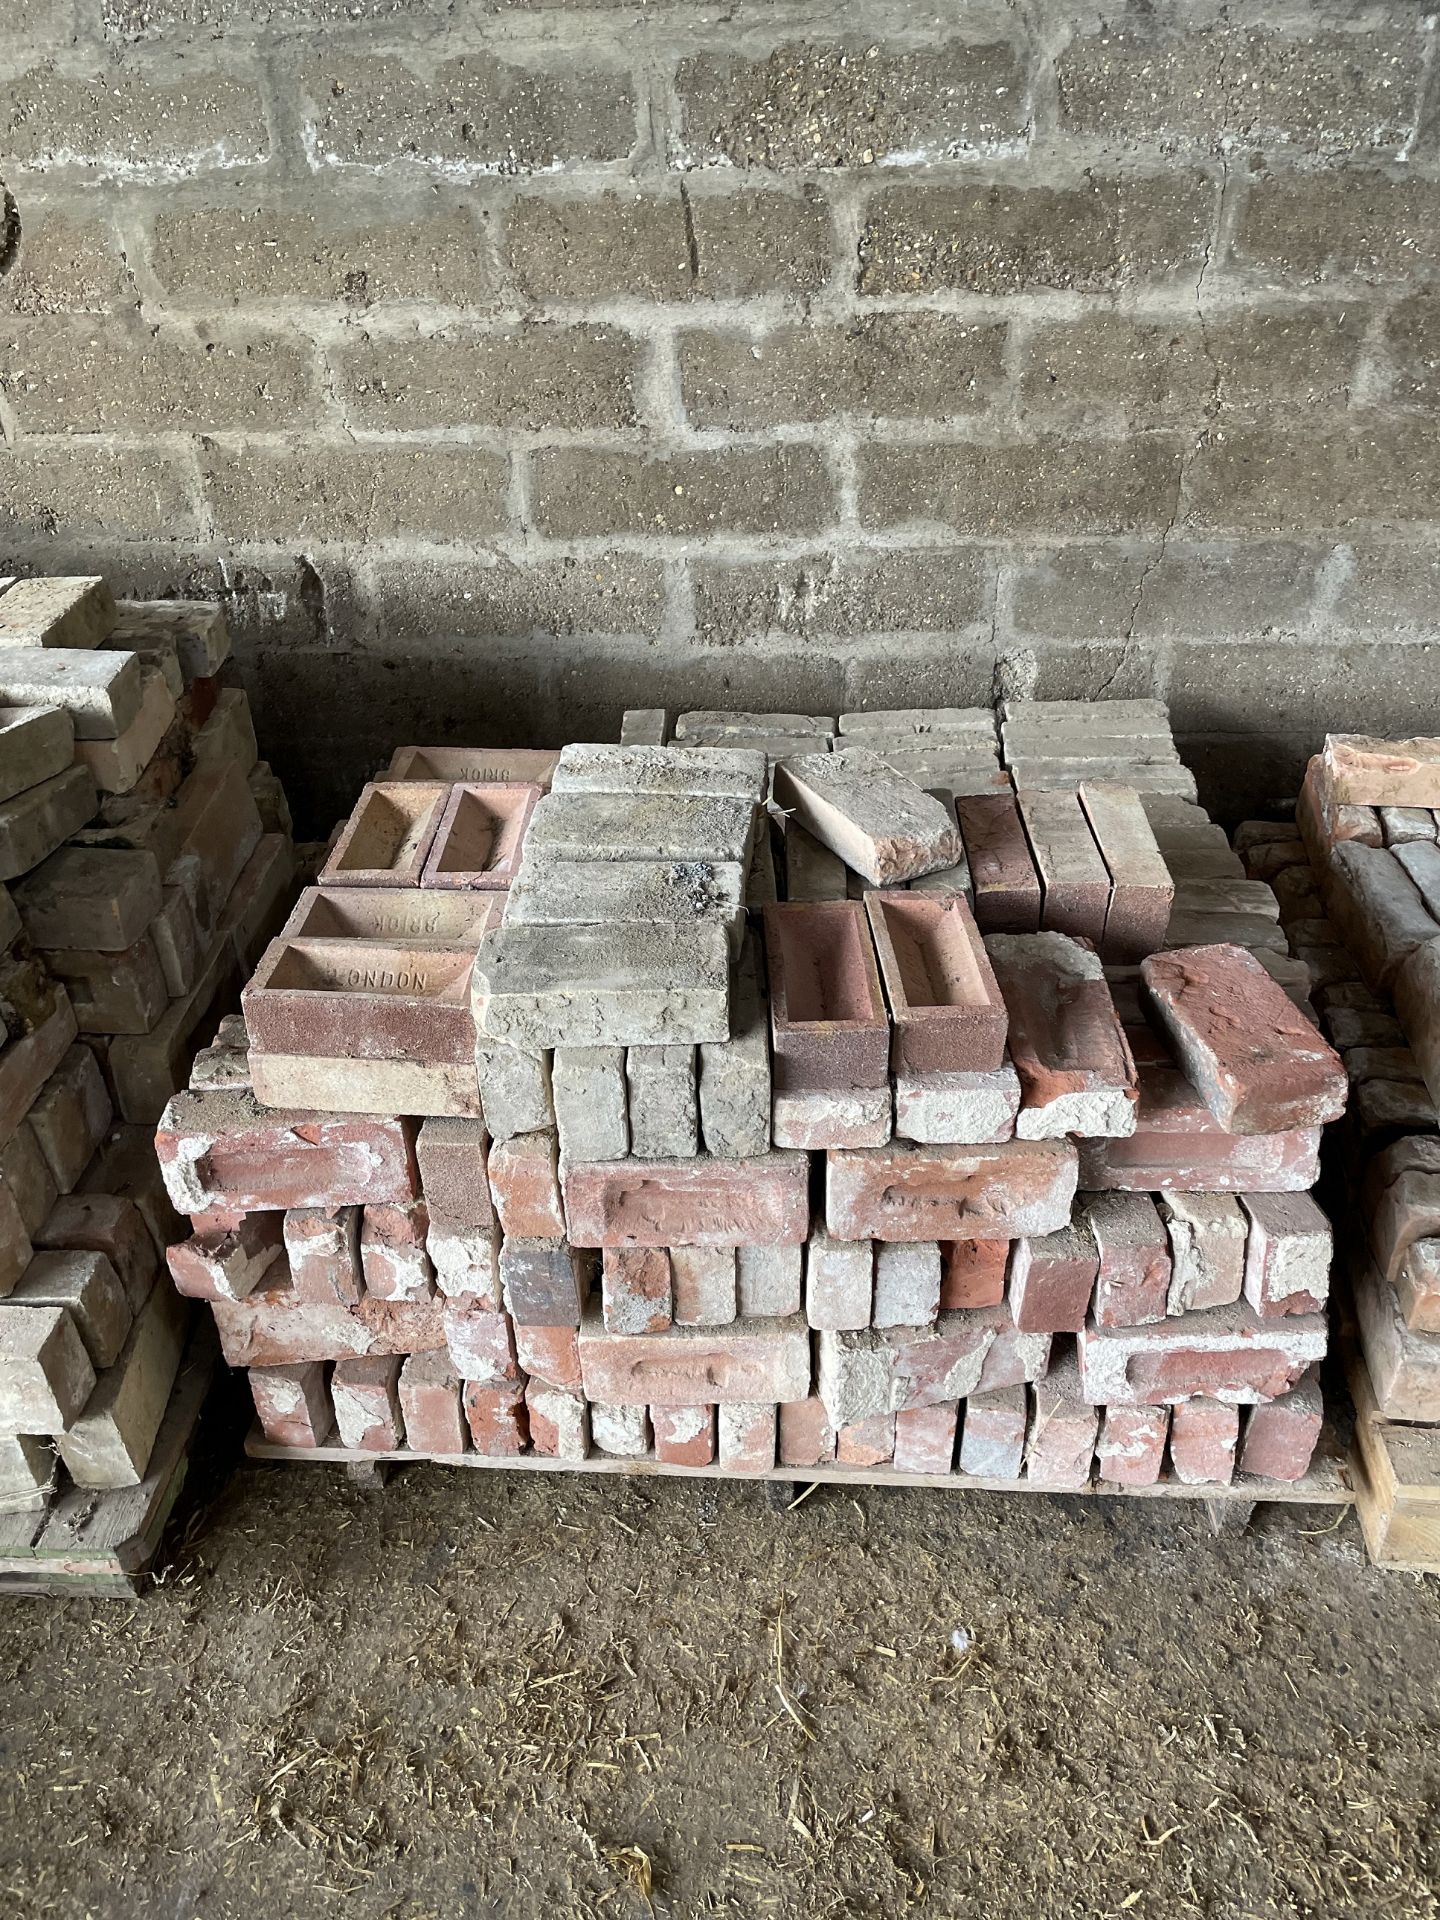 Quantity of Bricks